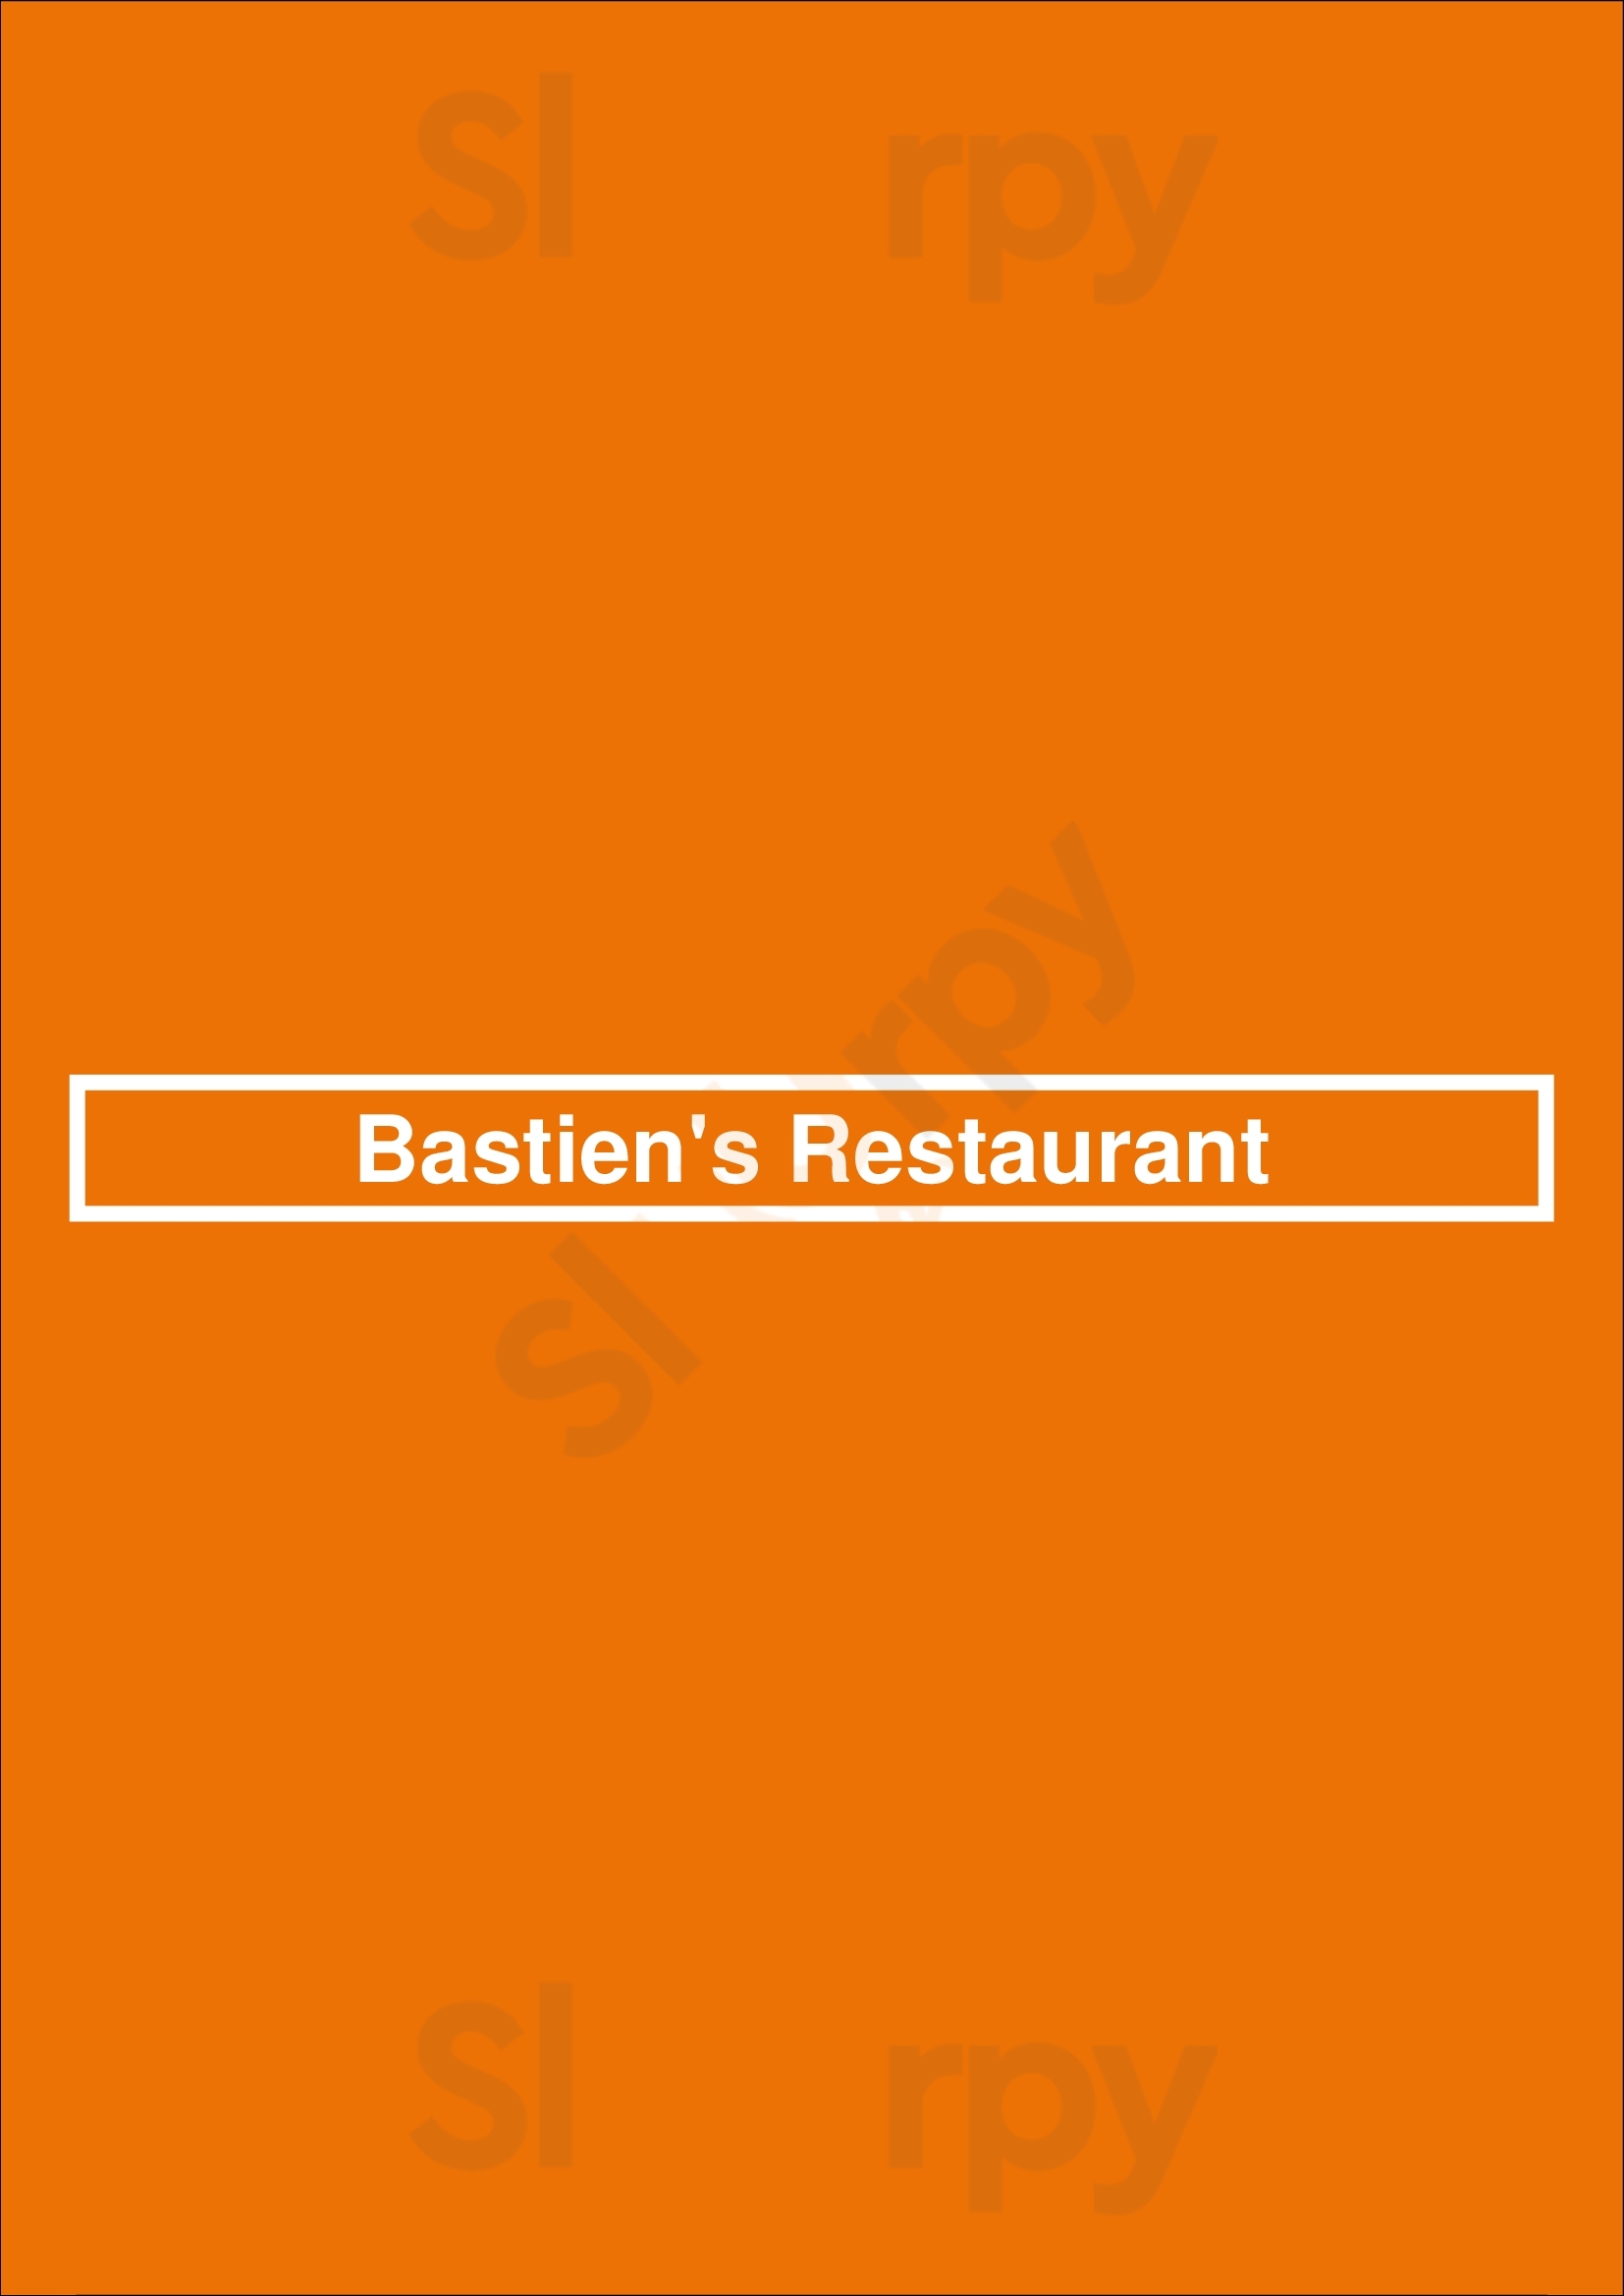 Bastien's Restaurant Denver Menu - 1